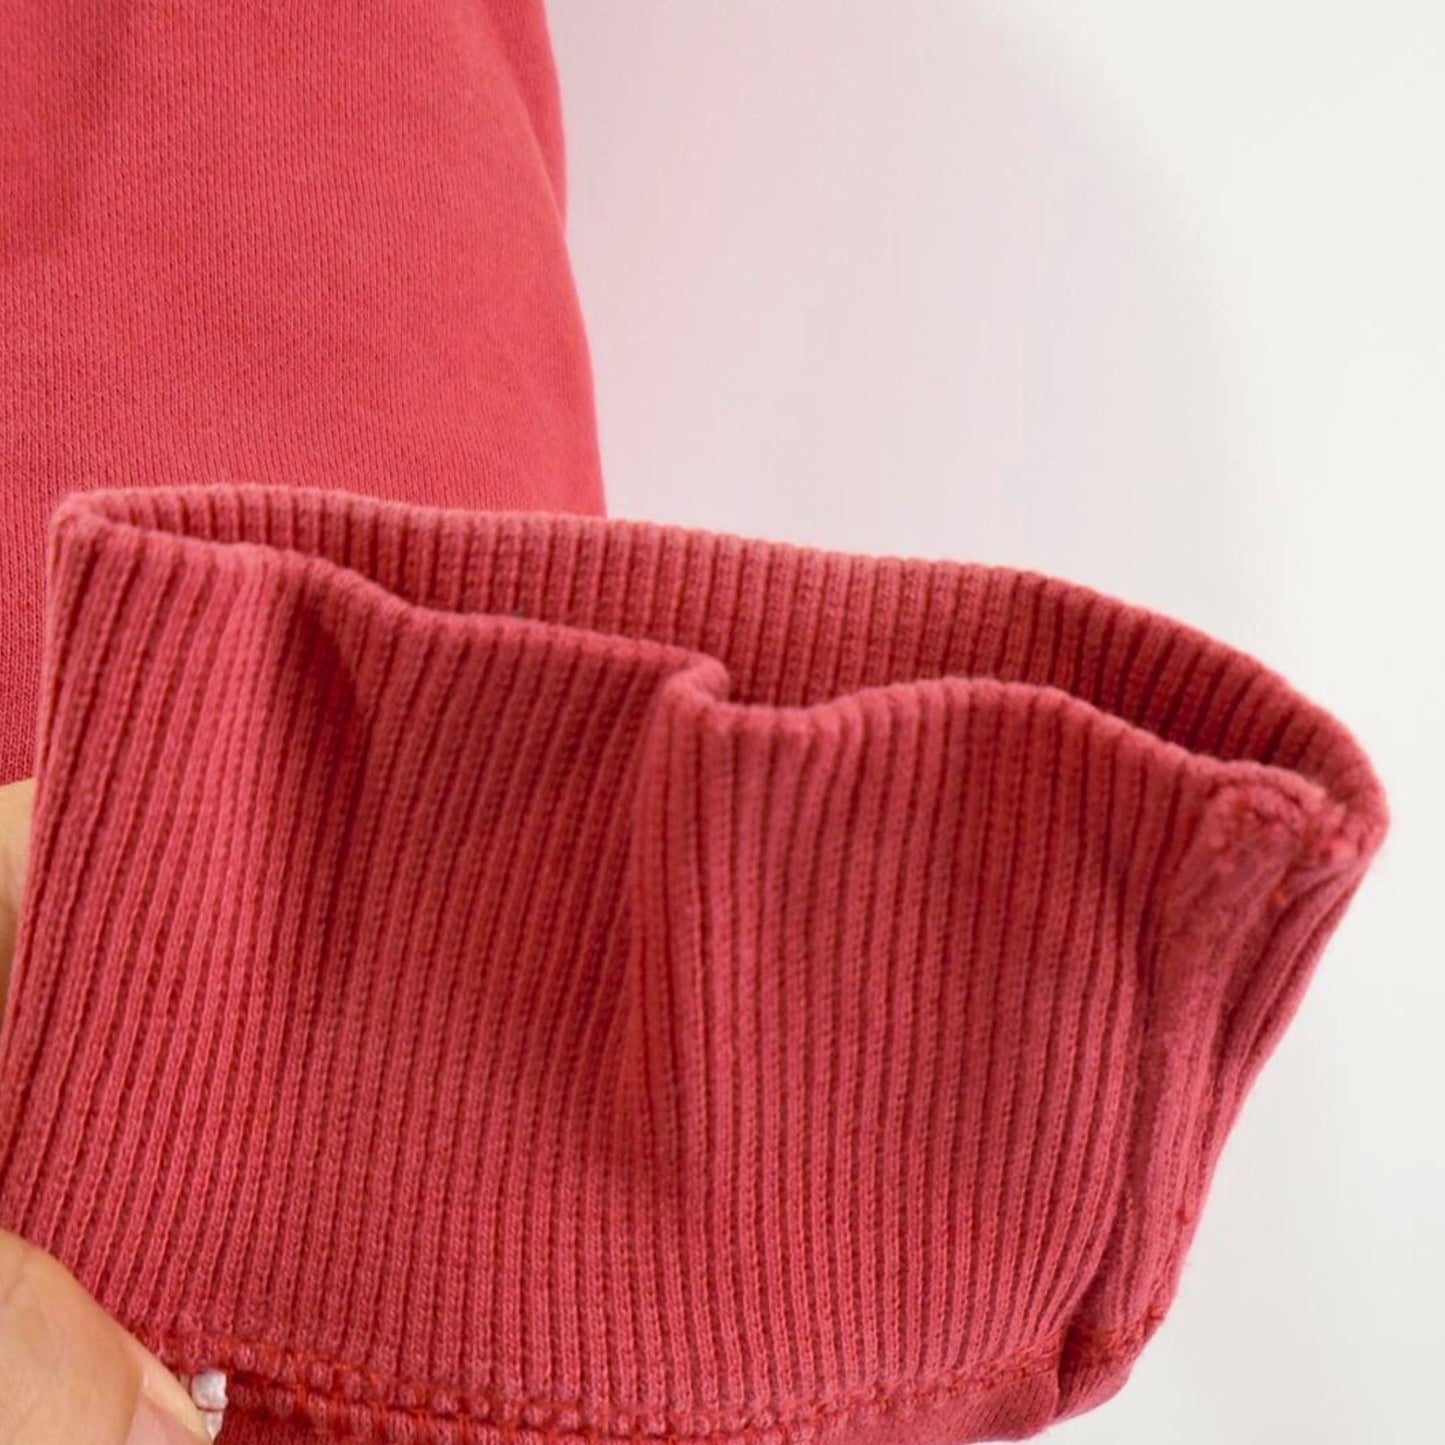 Schnappen Sie sich Ihren roten Reebok Damen-Hoodie, Größe S – gebraucht, zufriedenstellender Zustand!